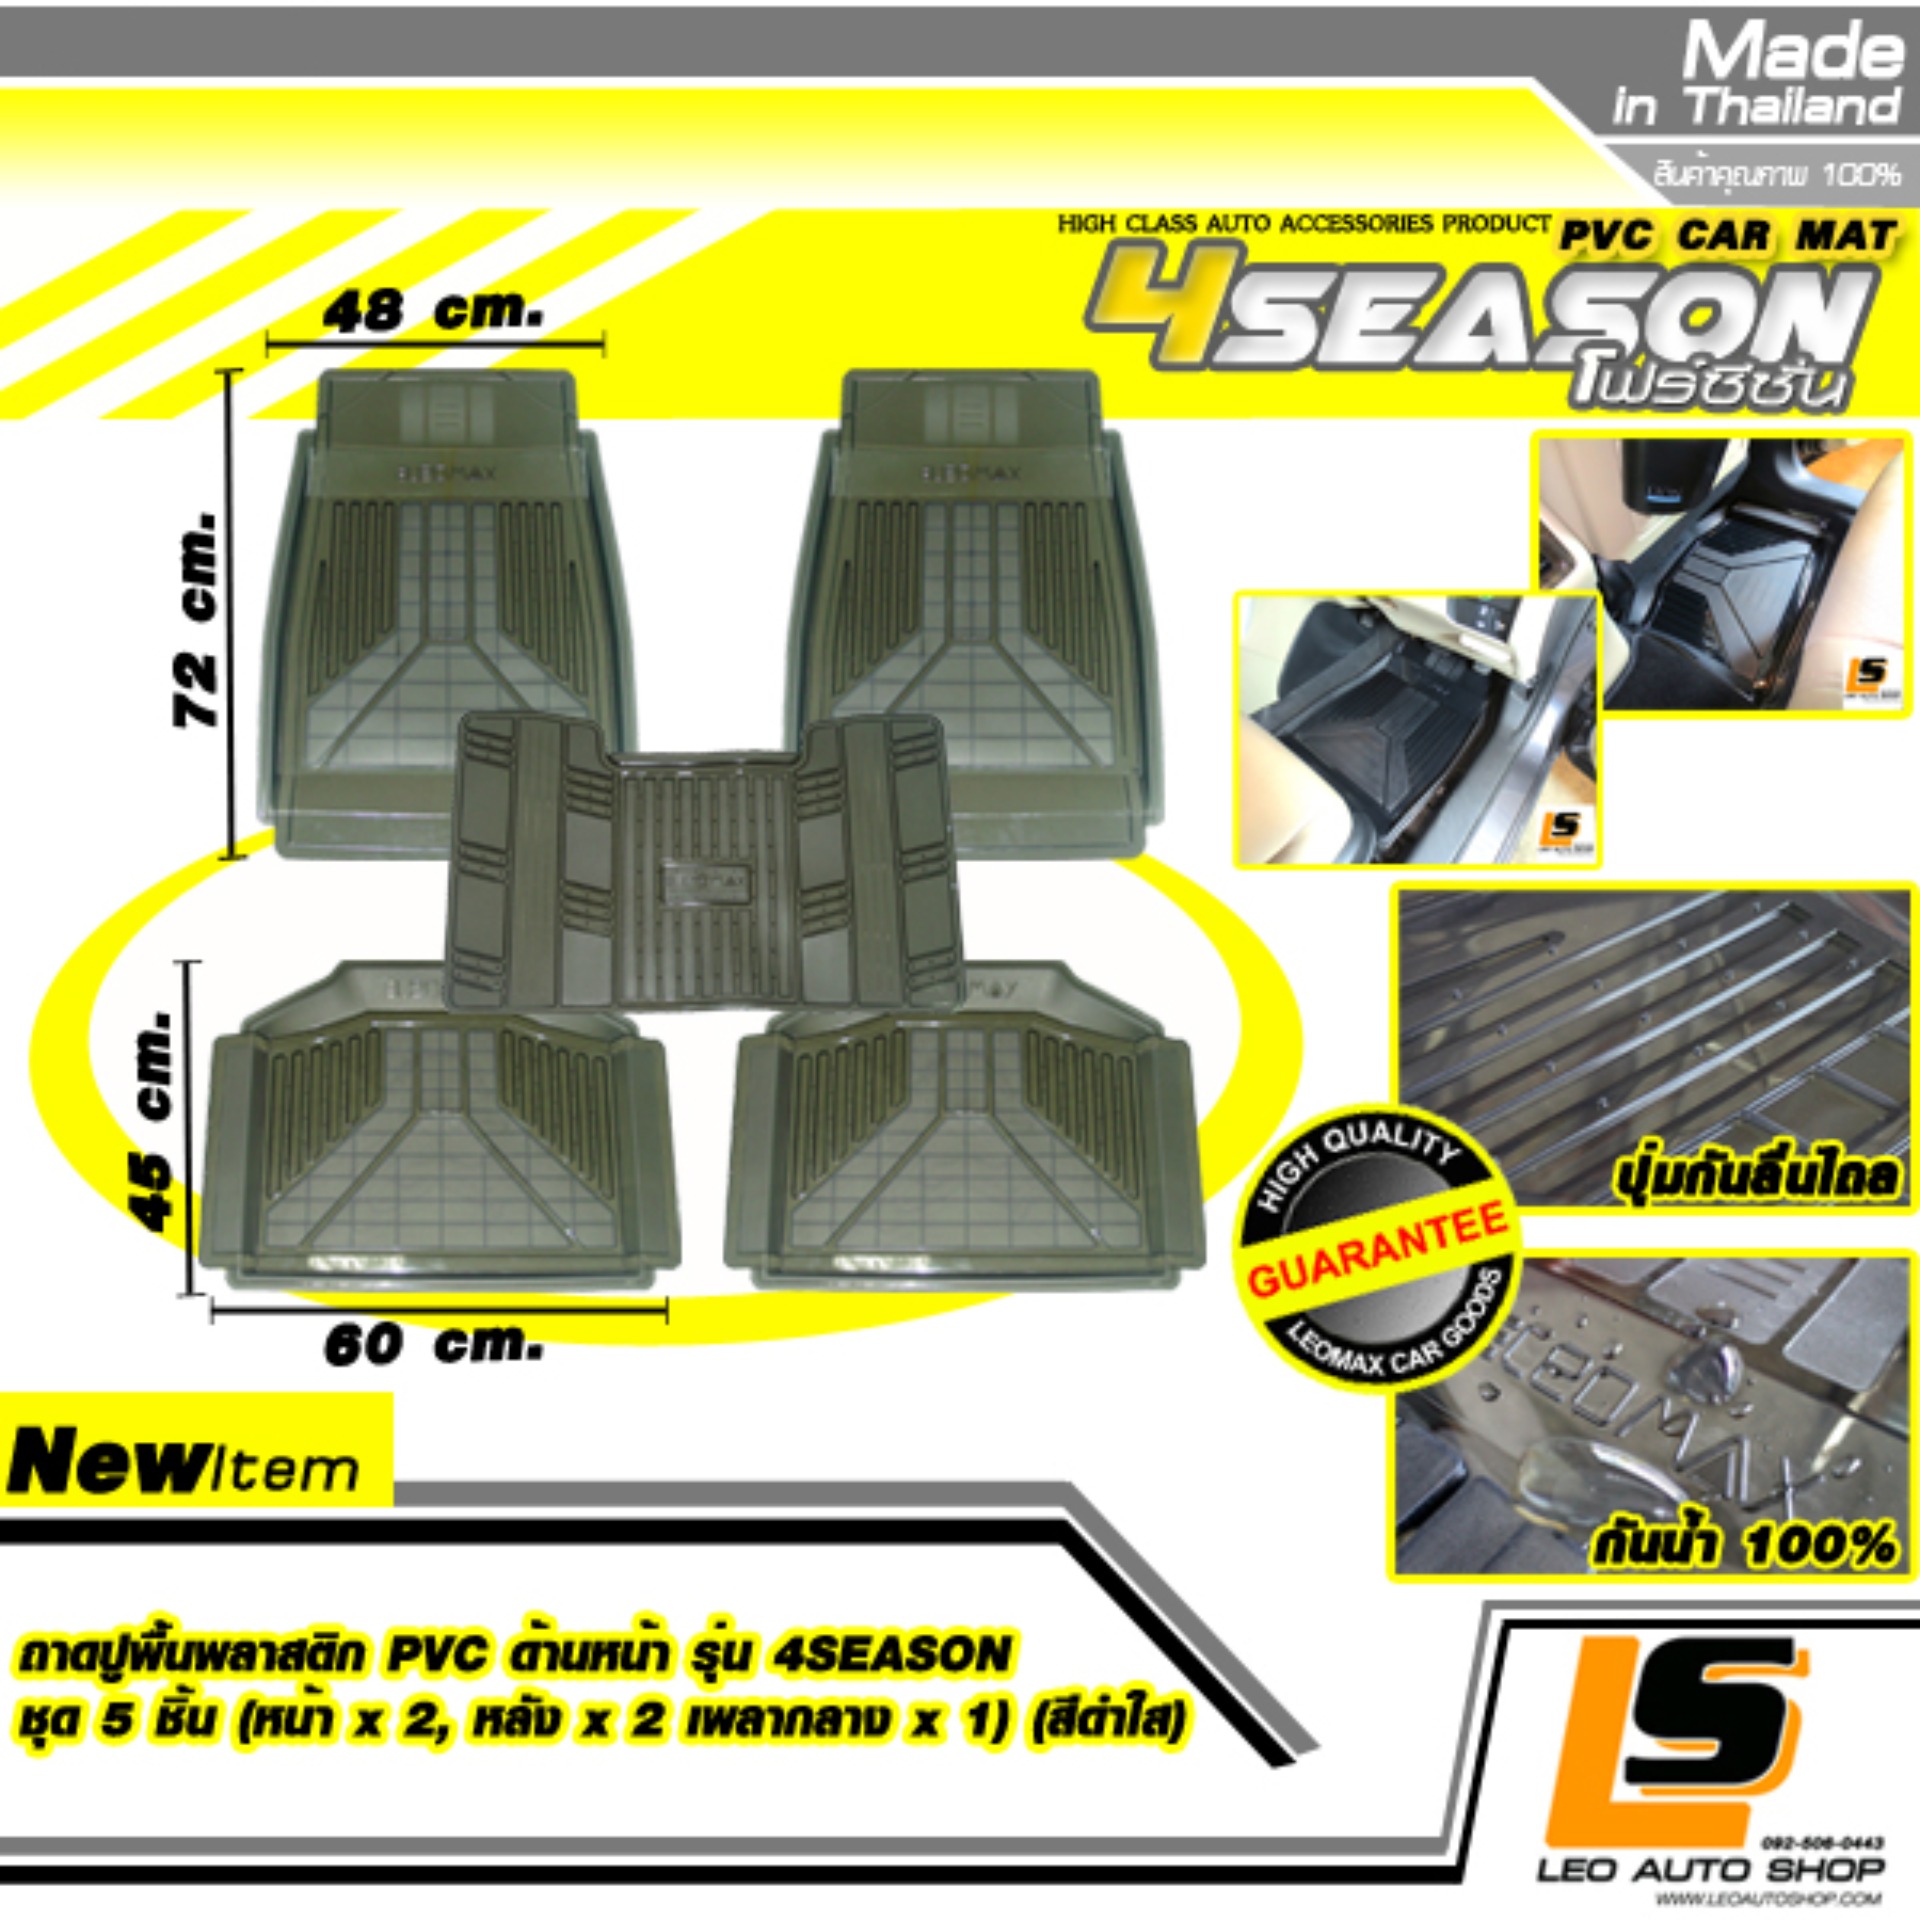 LEOMAX ชุด 5 ชิ้น ถาด PVC 4SEASON ดำใส -  ชุด 5 ชิ้น ถาดปูพื้นรถยนต์ พลาสติก PVC รุ่น 4SEASON  (หน้าx2, หลังx2 , เพลาx1) (สีดำใส)